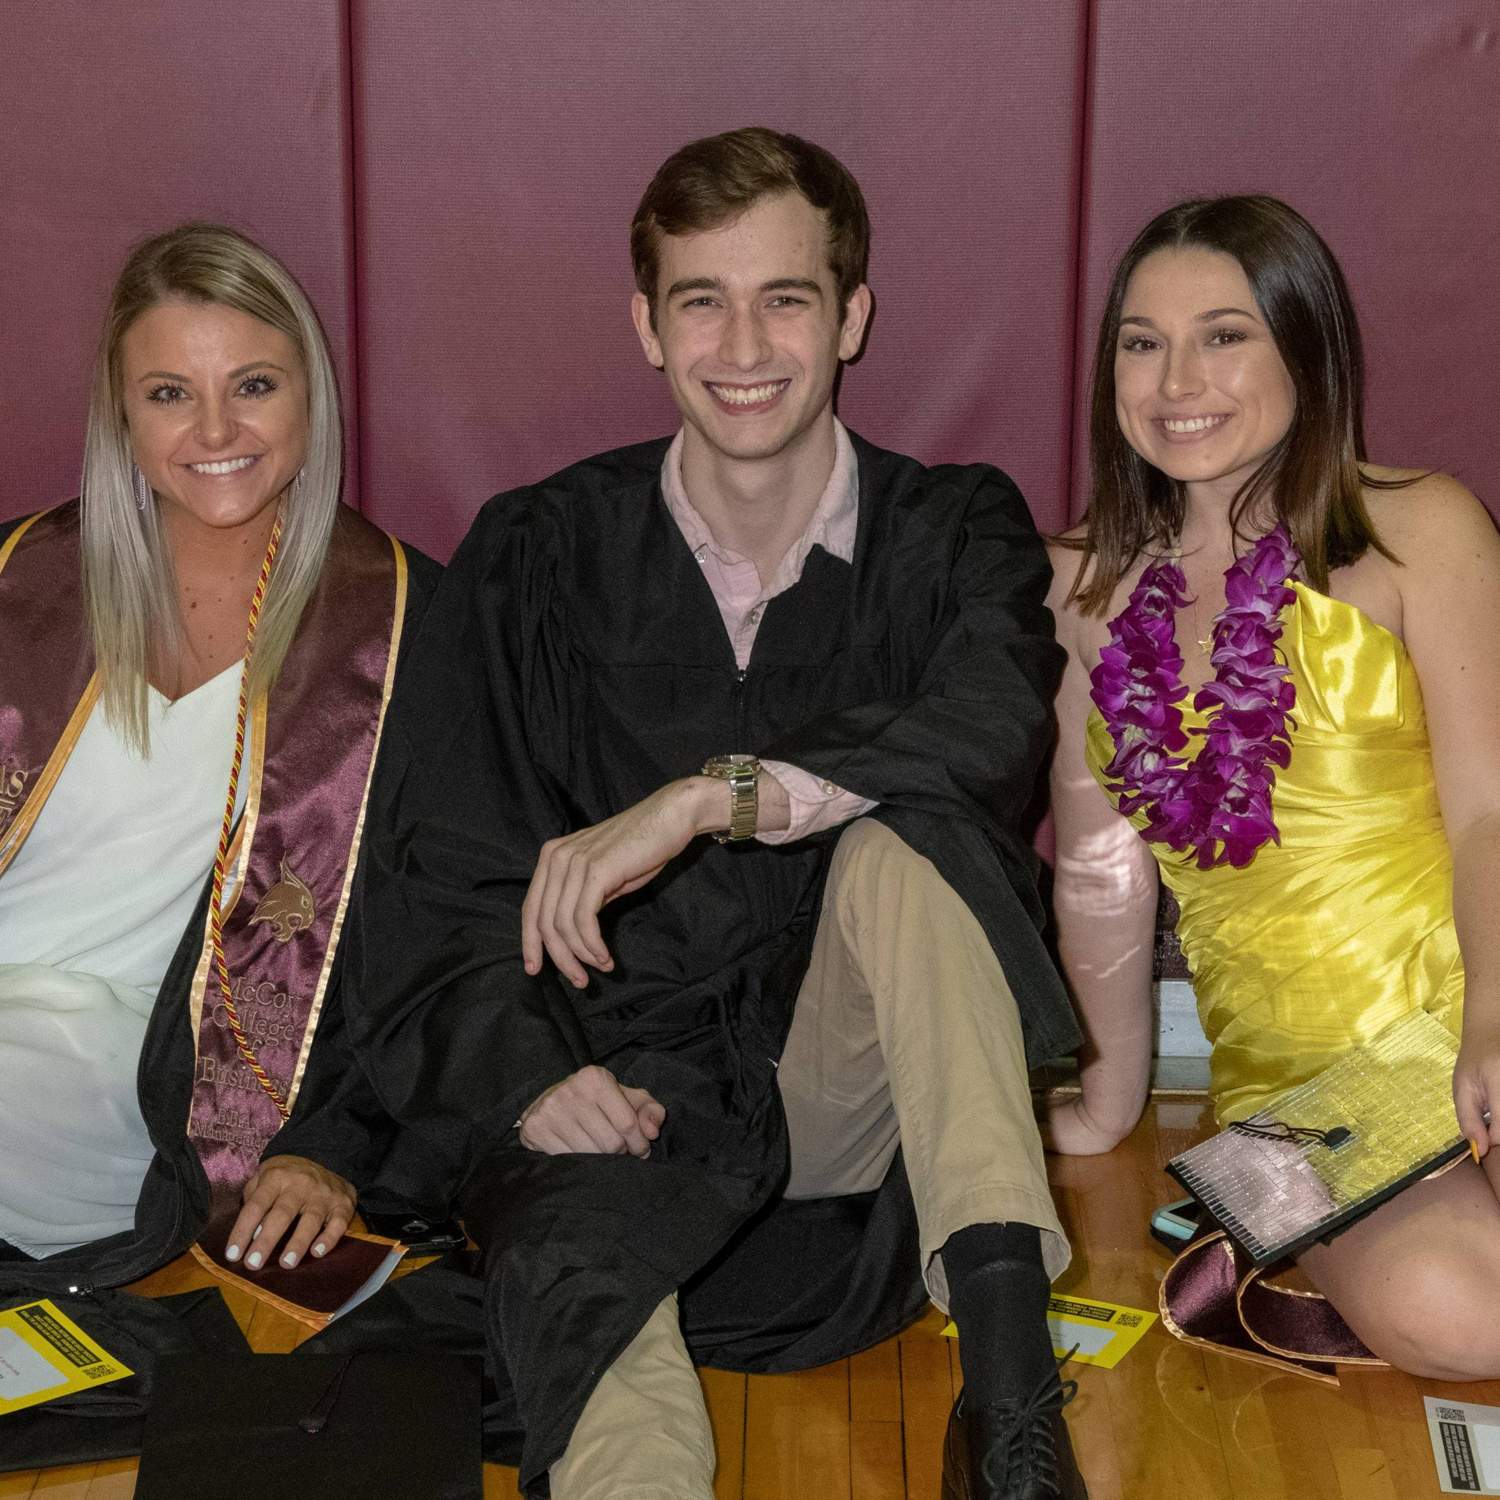 Three graduates smiling